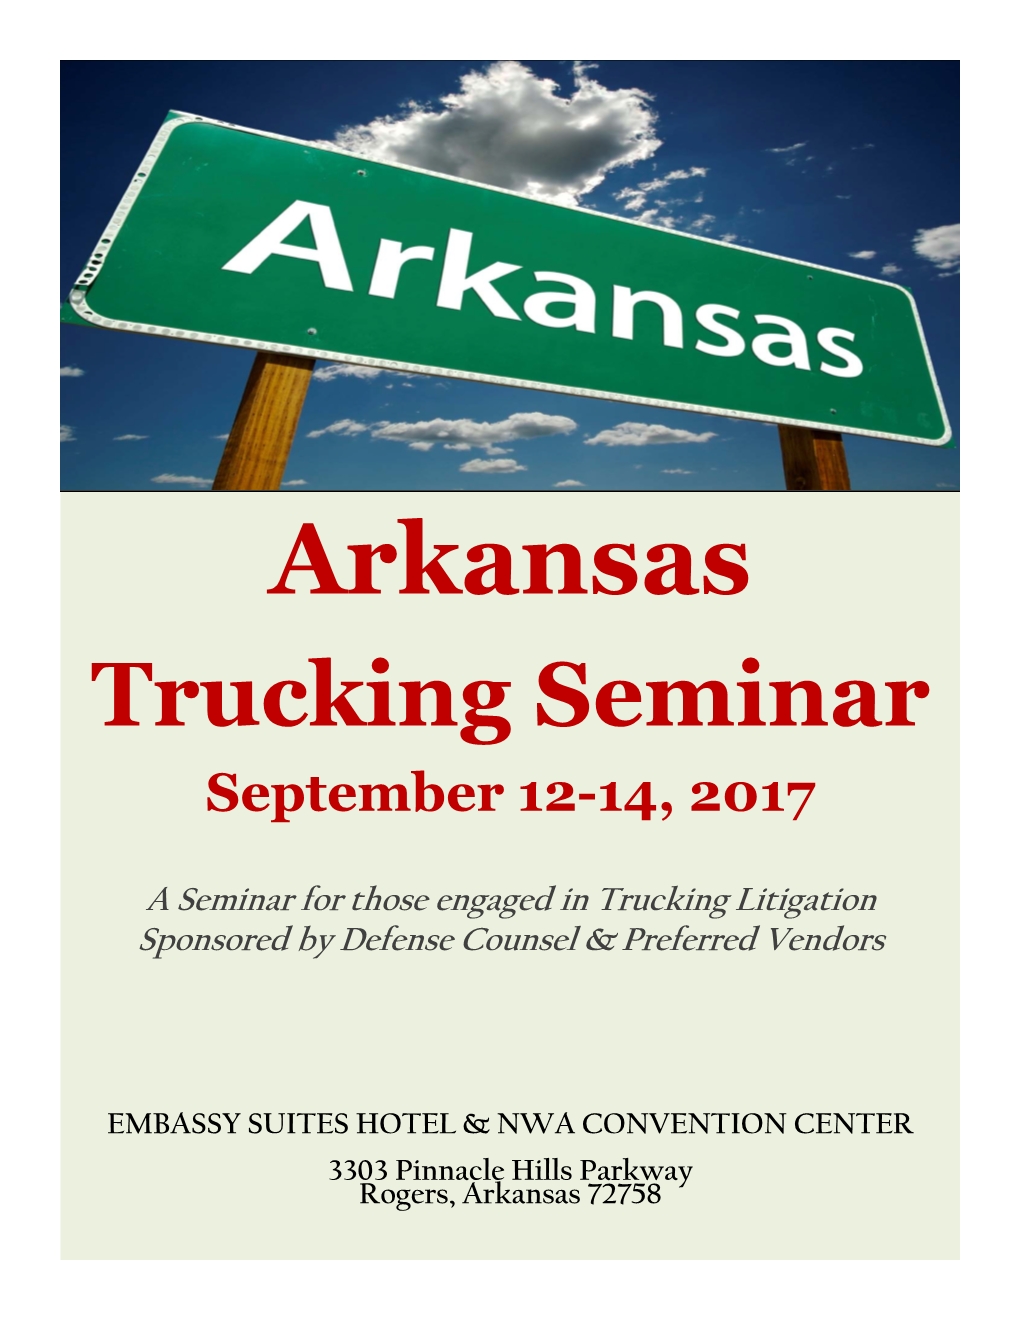 Arkansas Trucking Seminar September 12-14, 2017